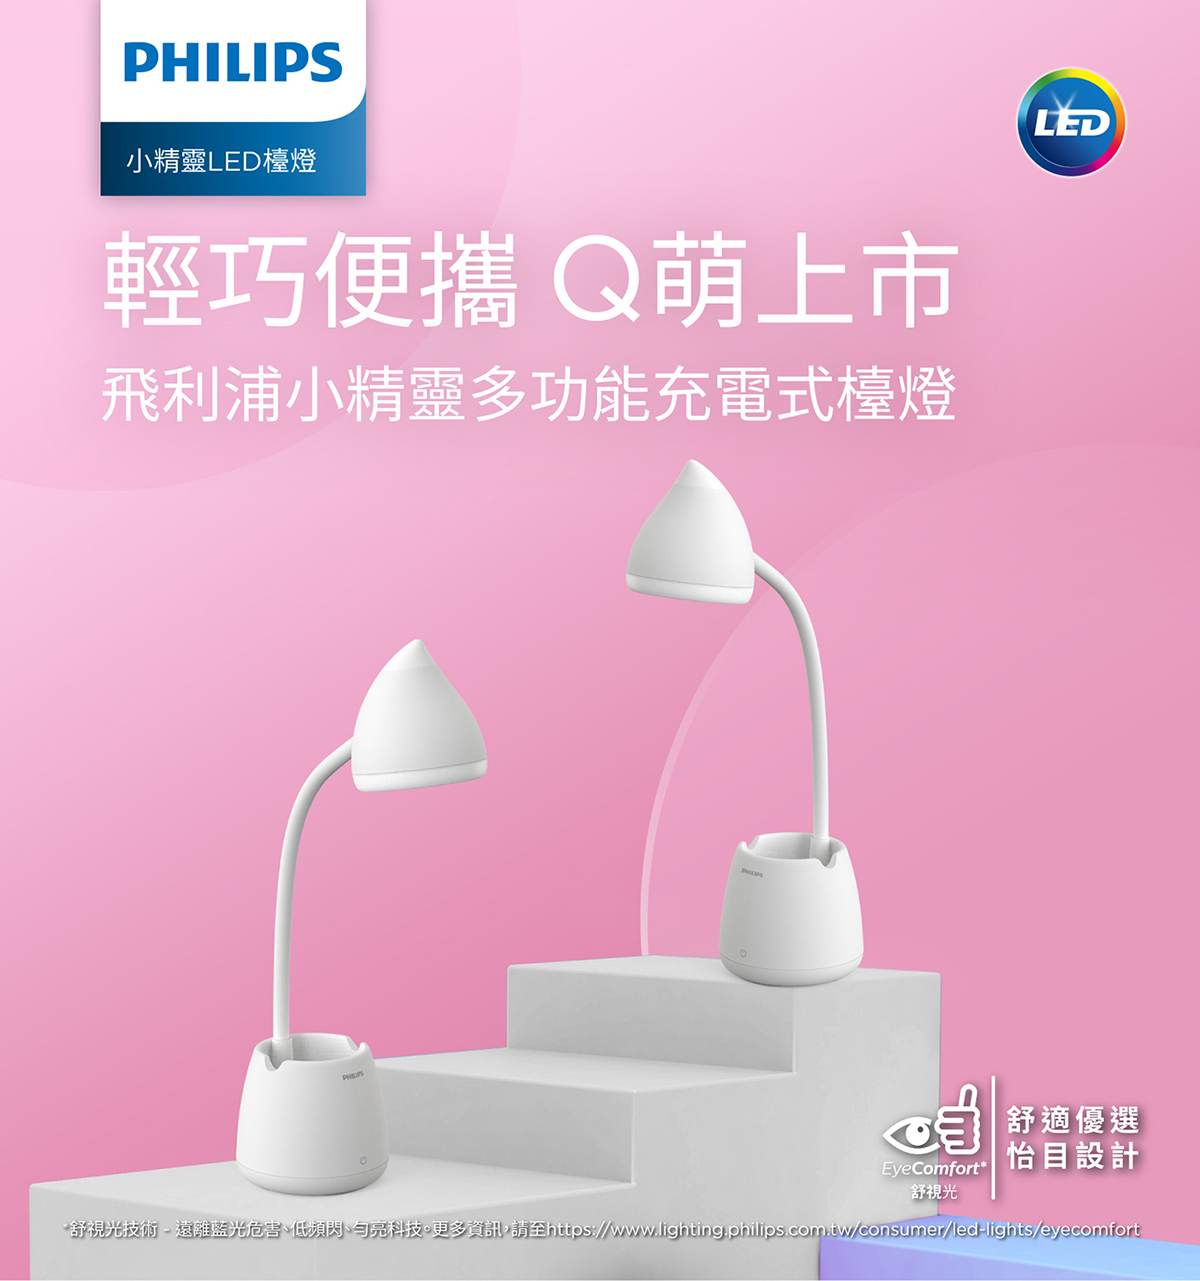 飛利浦 小精靈多功能充電式 LED 檯燈輕巧便攜Q萌上市